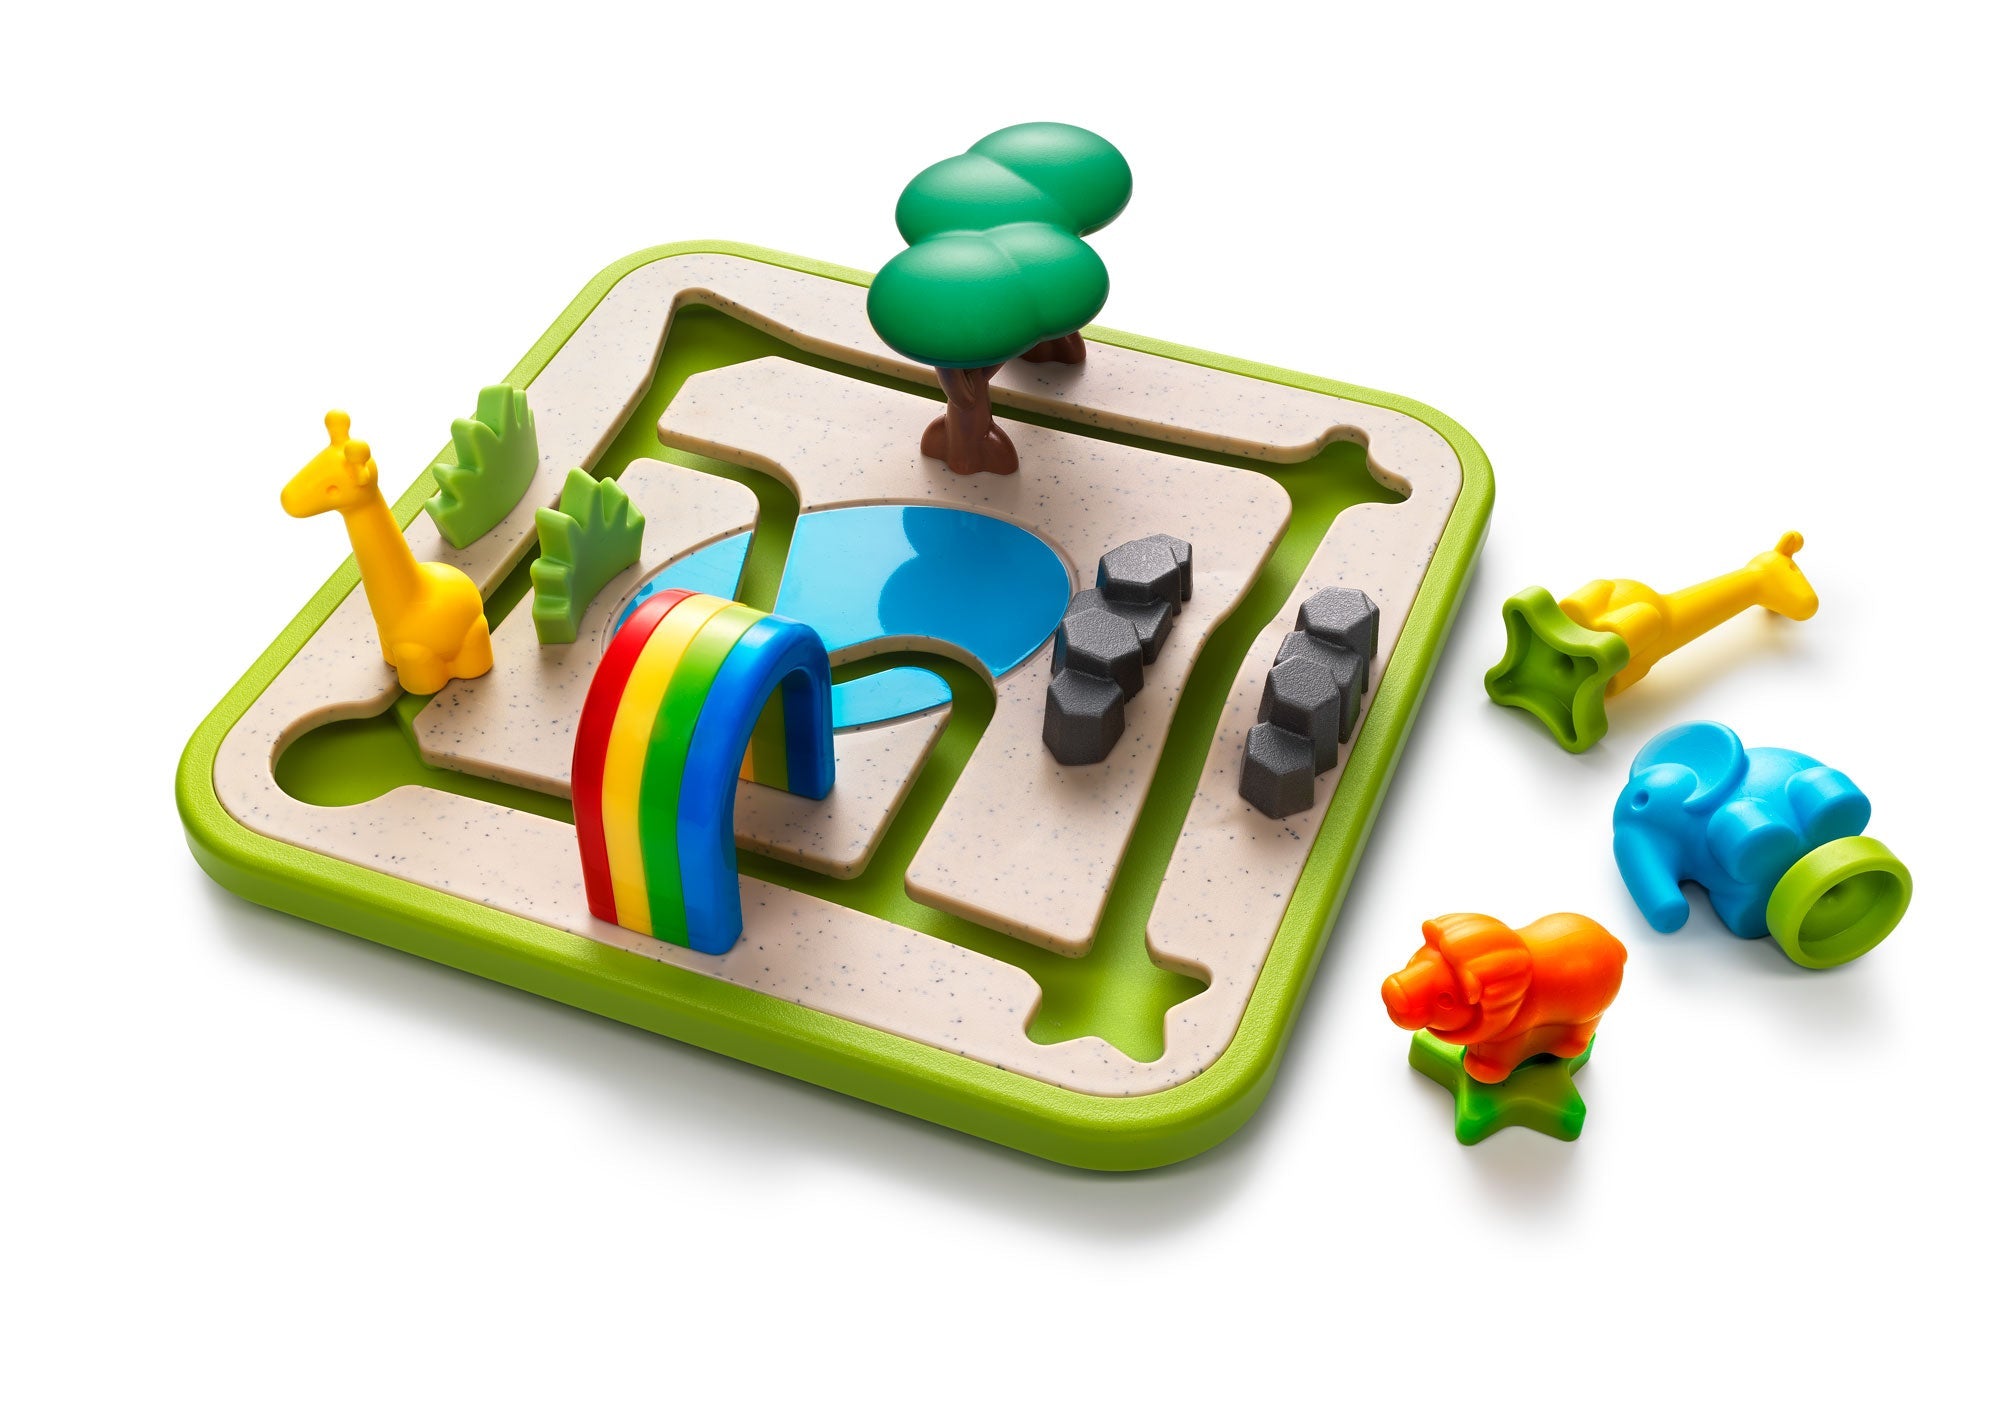 Smart Toys & Games-Safari Park Jr.-SG042US-Legacy Toys